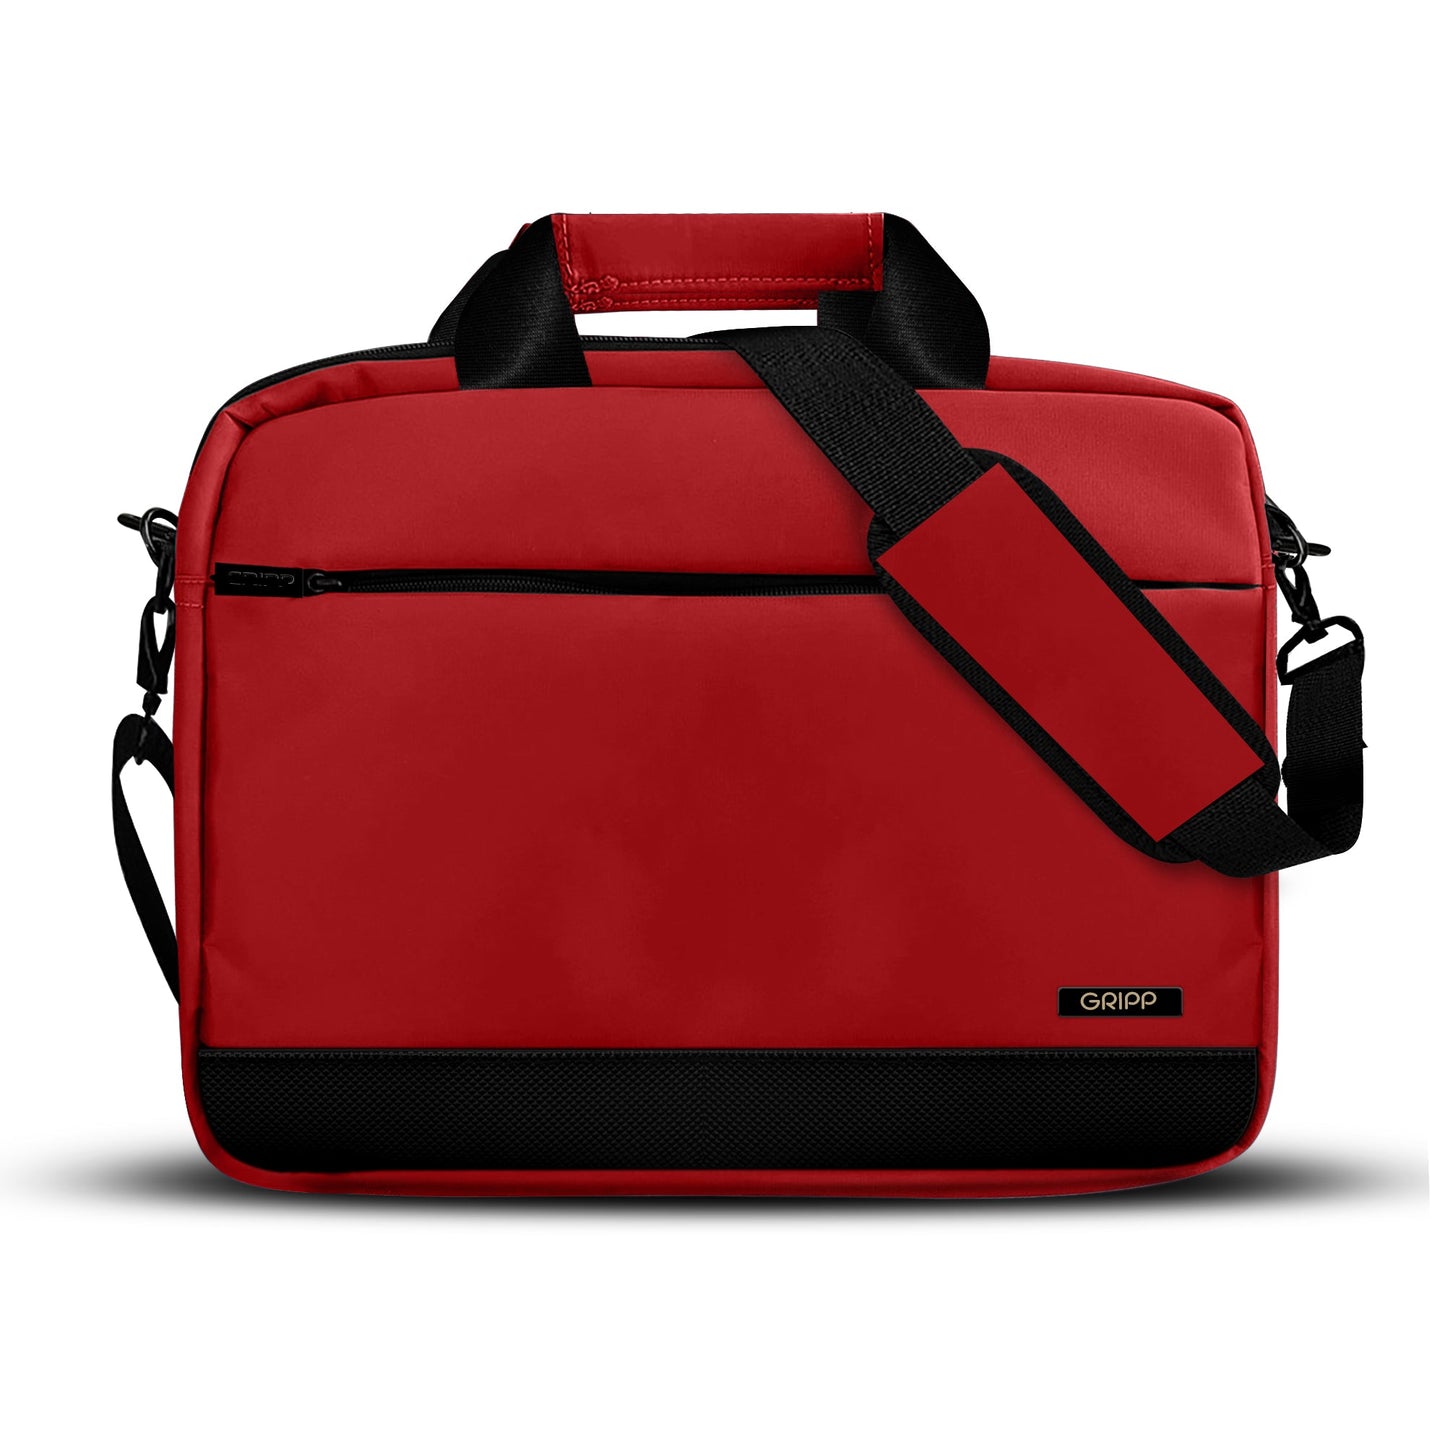 Gripp Bolt 13.3" Macbook /laptop Bag - Red